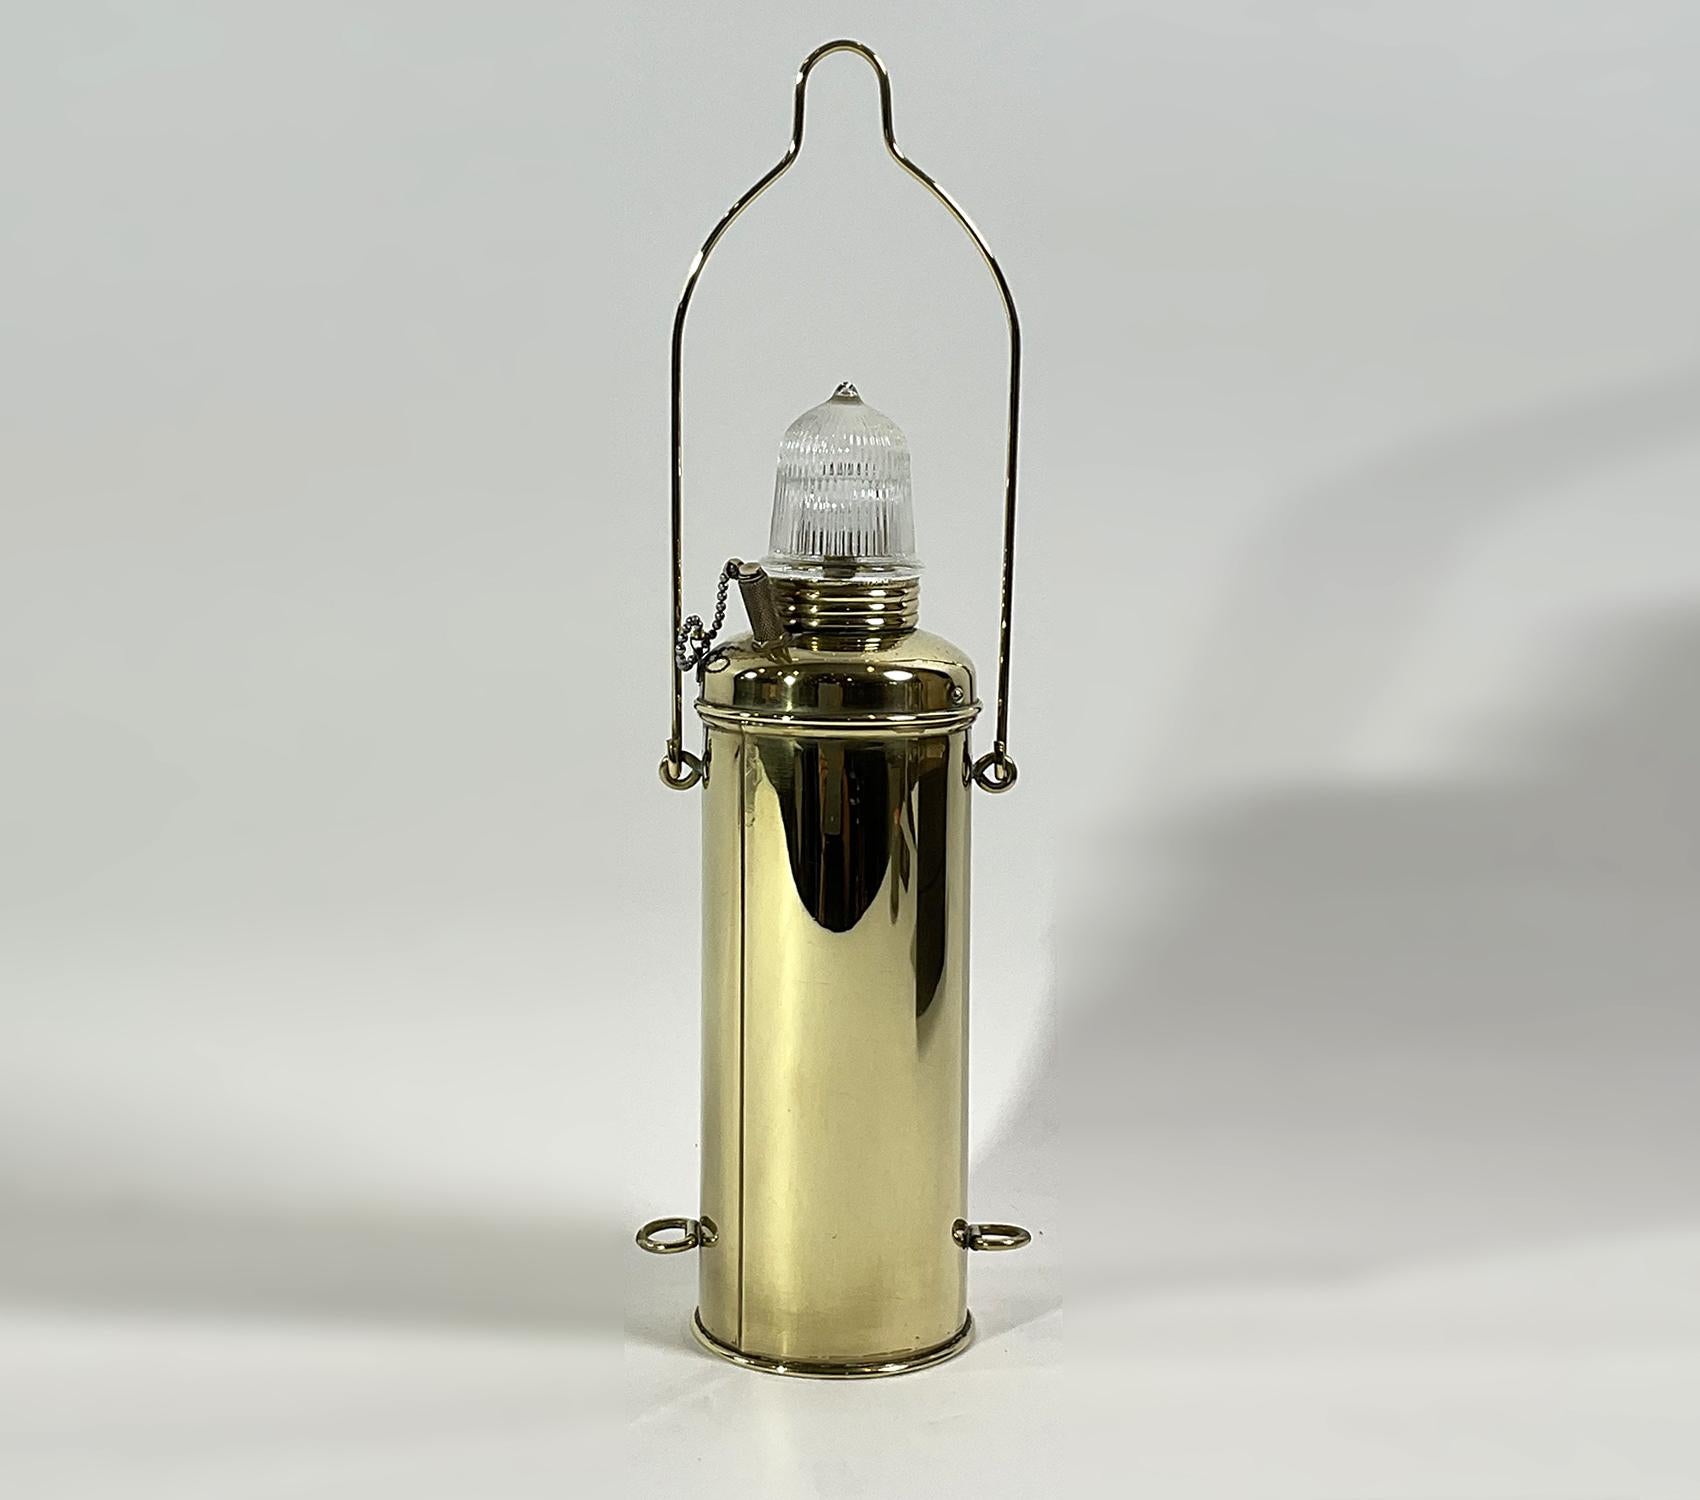 Lanterne d'ancre de bateau en laiton massif avec lentille en verre de Fresnel. Lampe à pile sèche. Vers 1950. Globe en verre de Fresnel. Poignée de transport marquée 